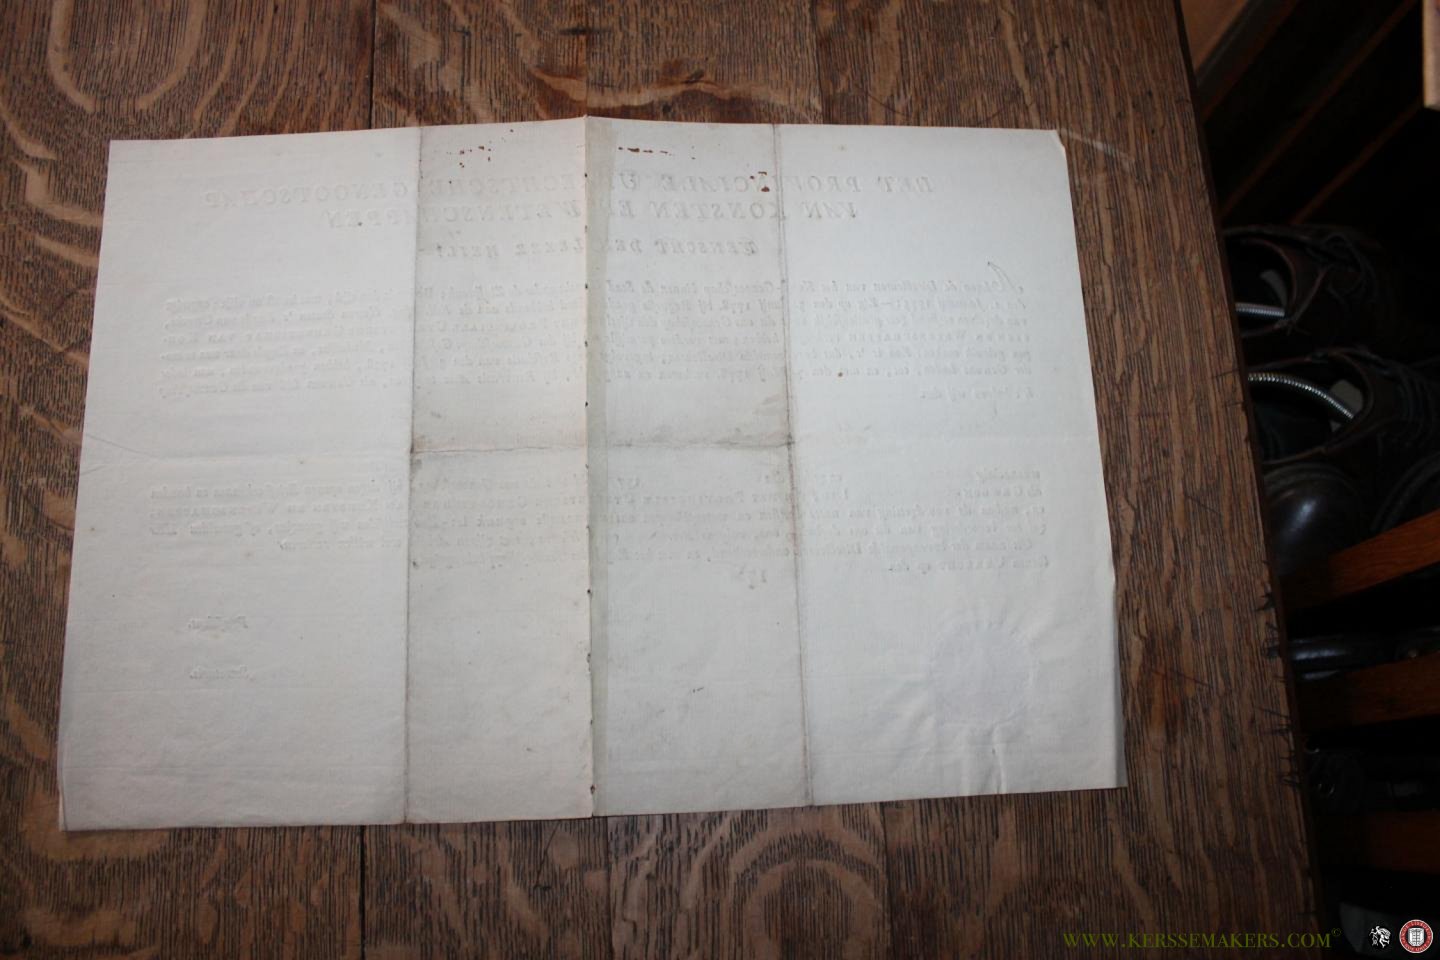  - Bewijs van lidmaatschap van het Provinciale Utrechtsche Genootschap van Konsten en Wetenschappen, 1778